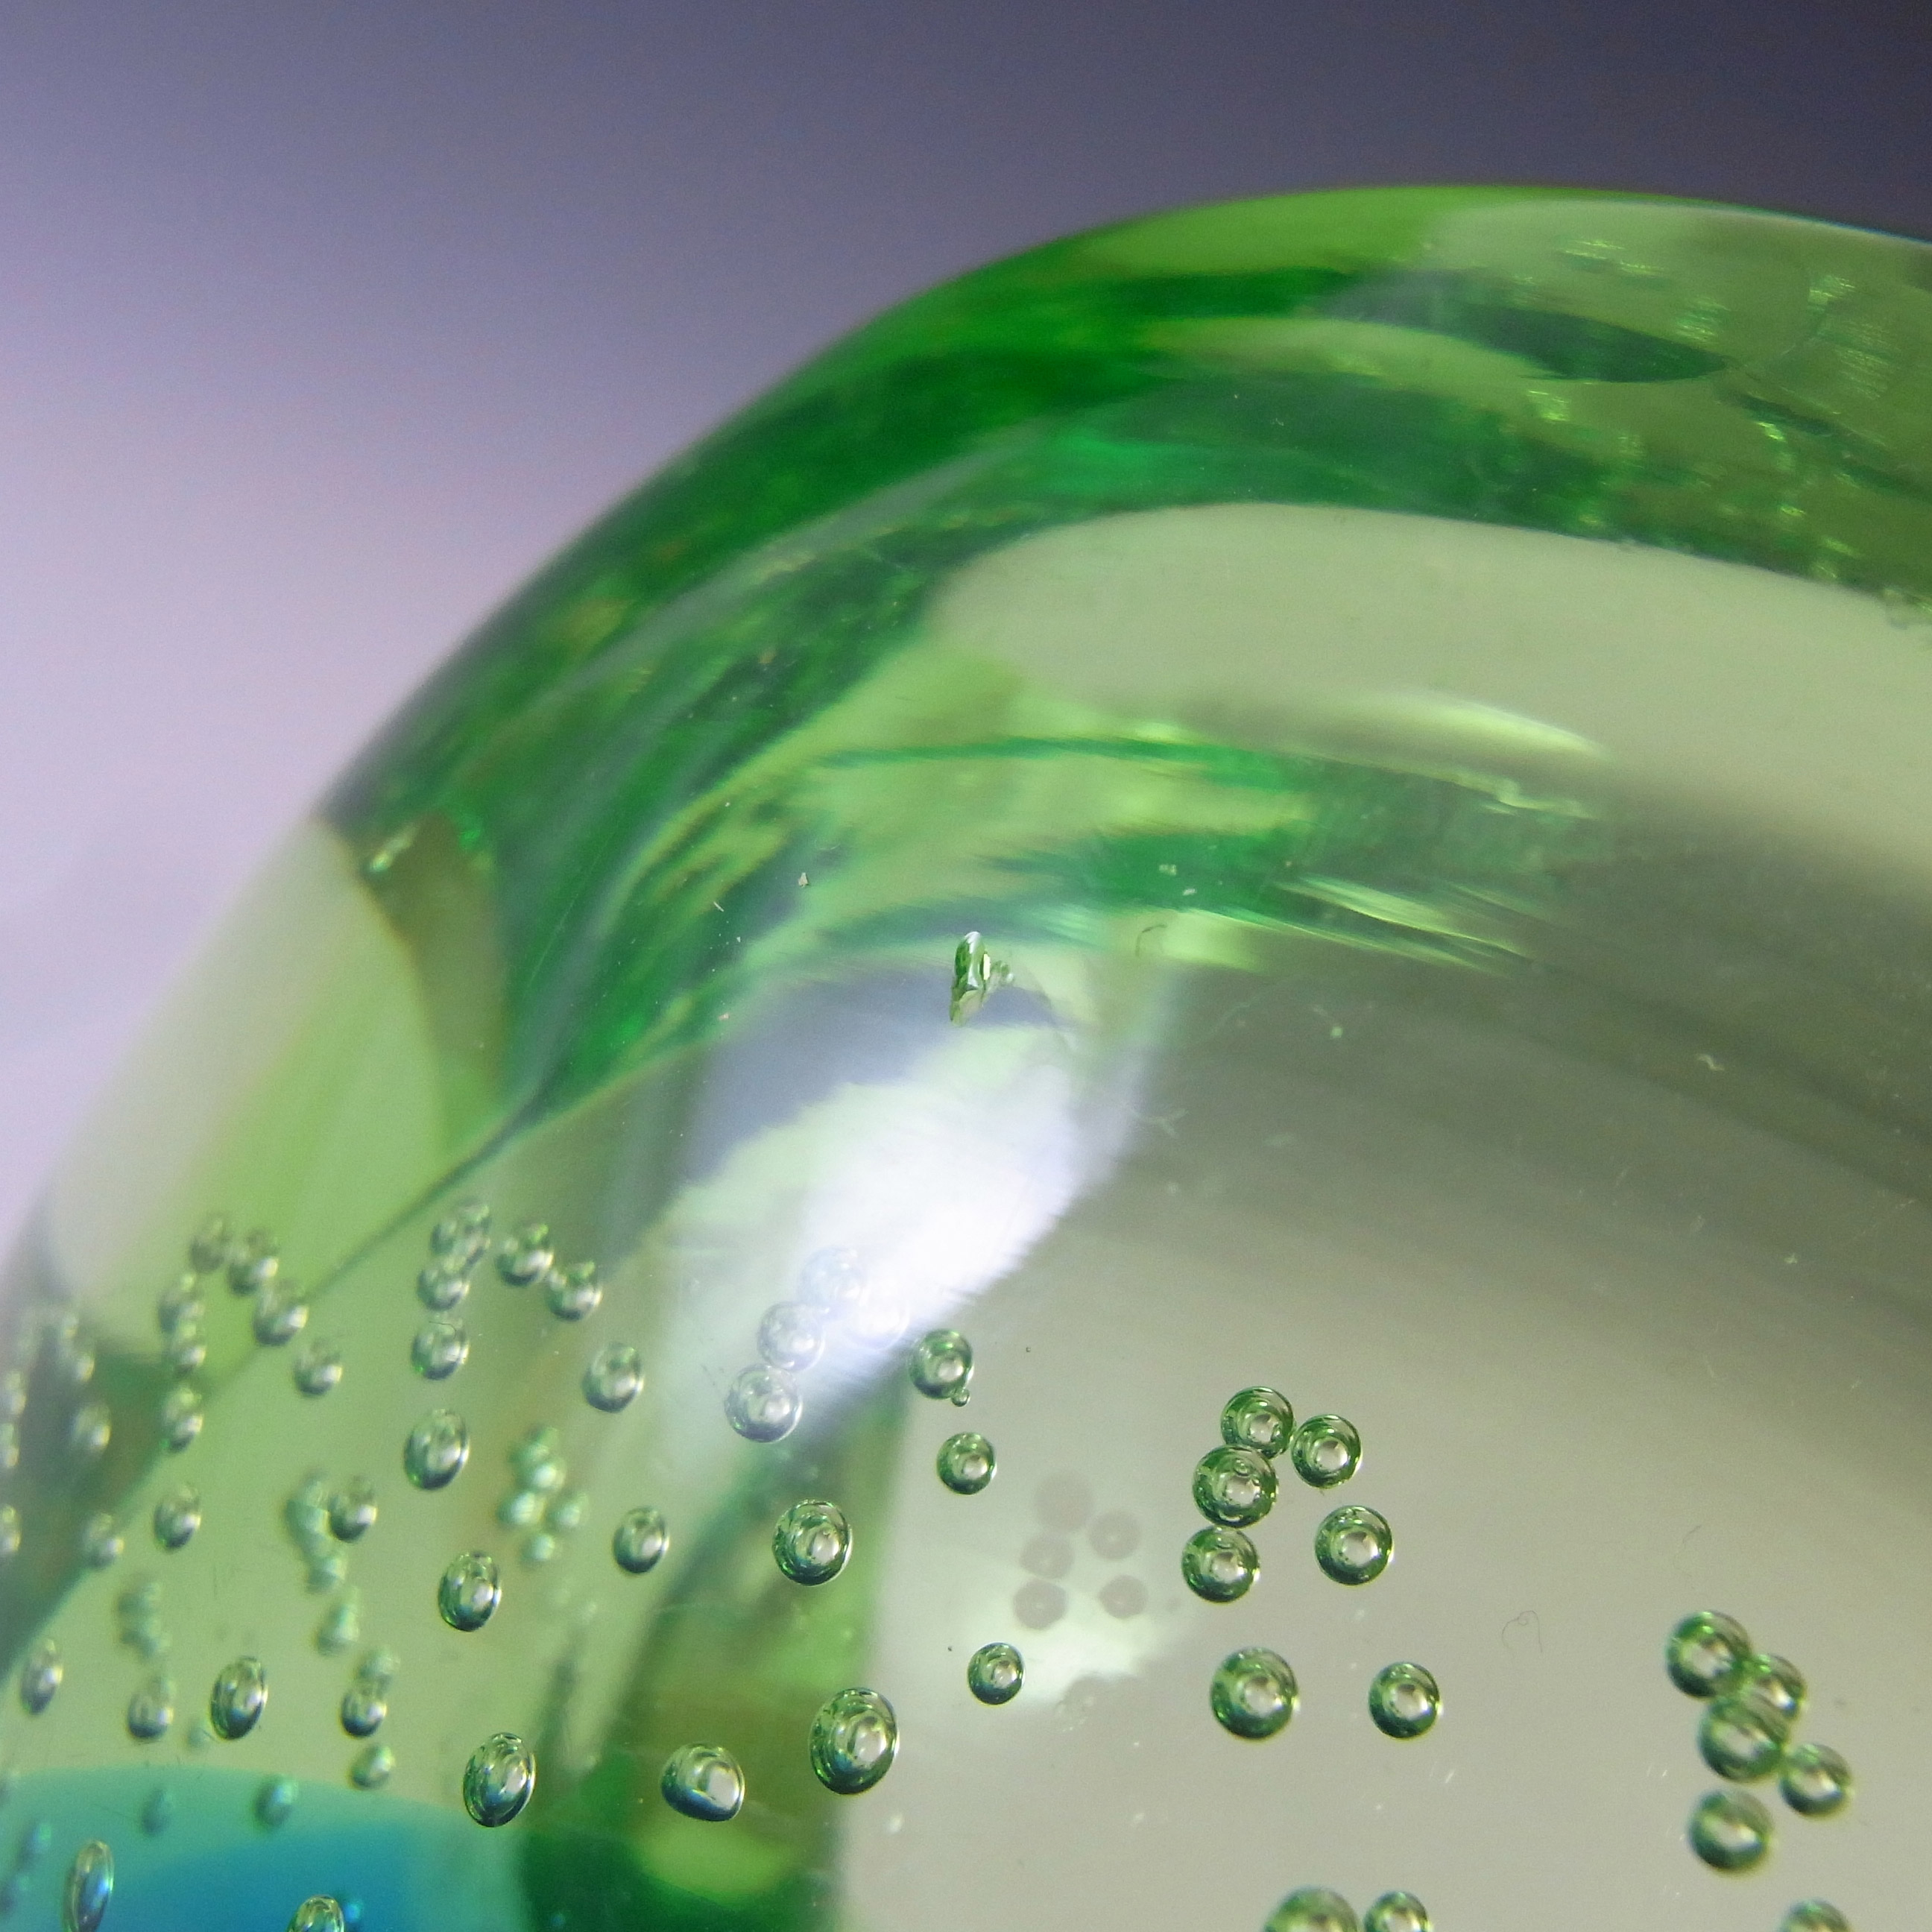 Galliano Ferro Murano Uranium Green Glass Bullicante Bowl - Click Image to Close